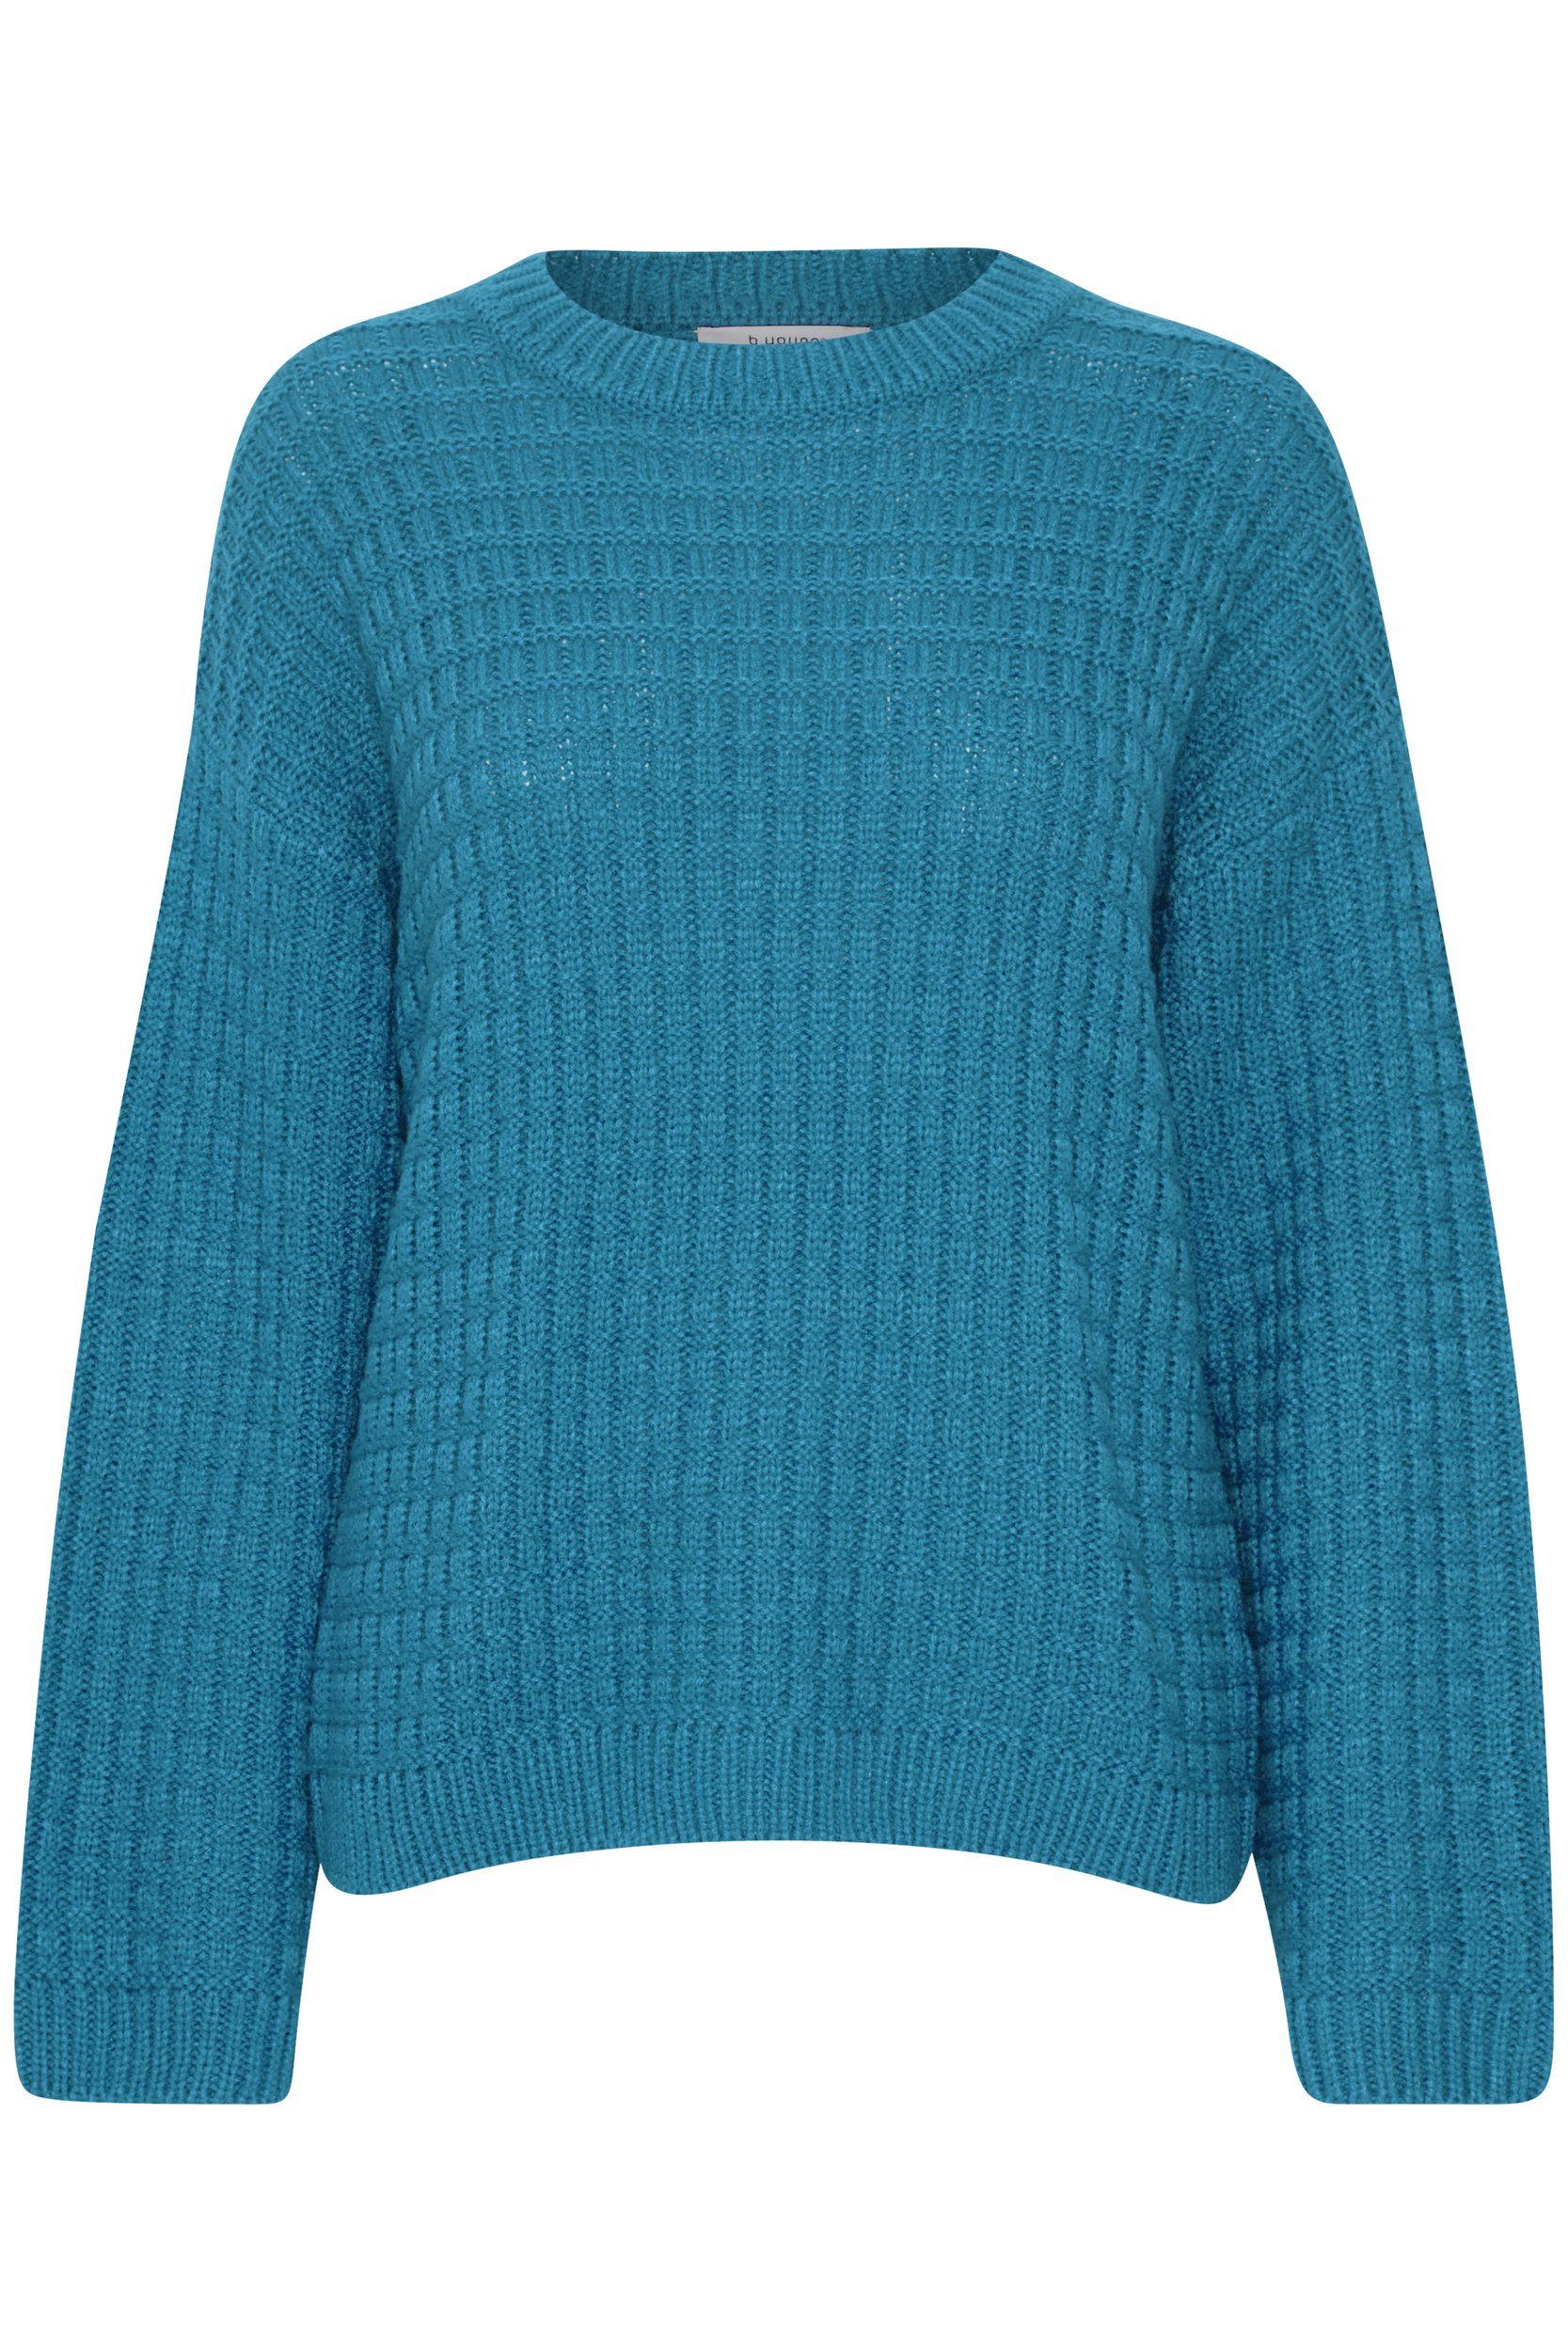 b.young Strickpullover Grobstrick Pullover Sweater mit Abgesetzten Schultern 6664 in Blau